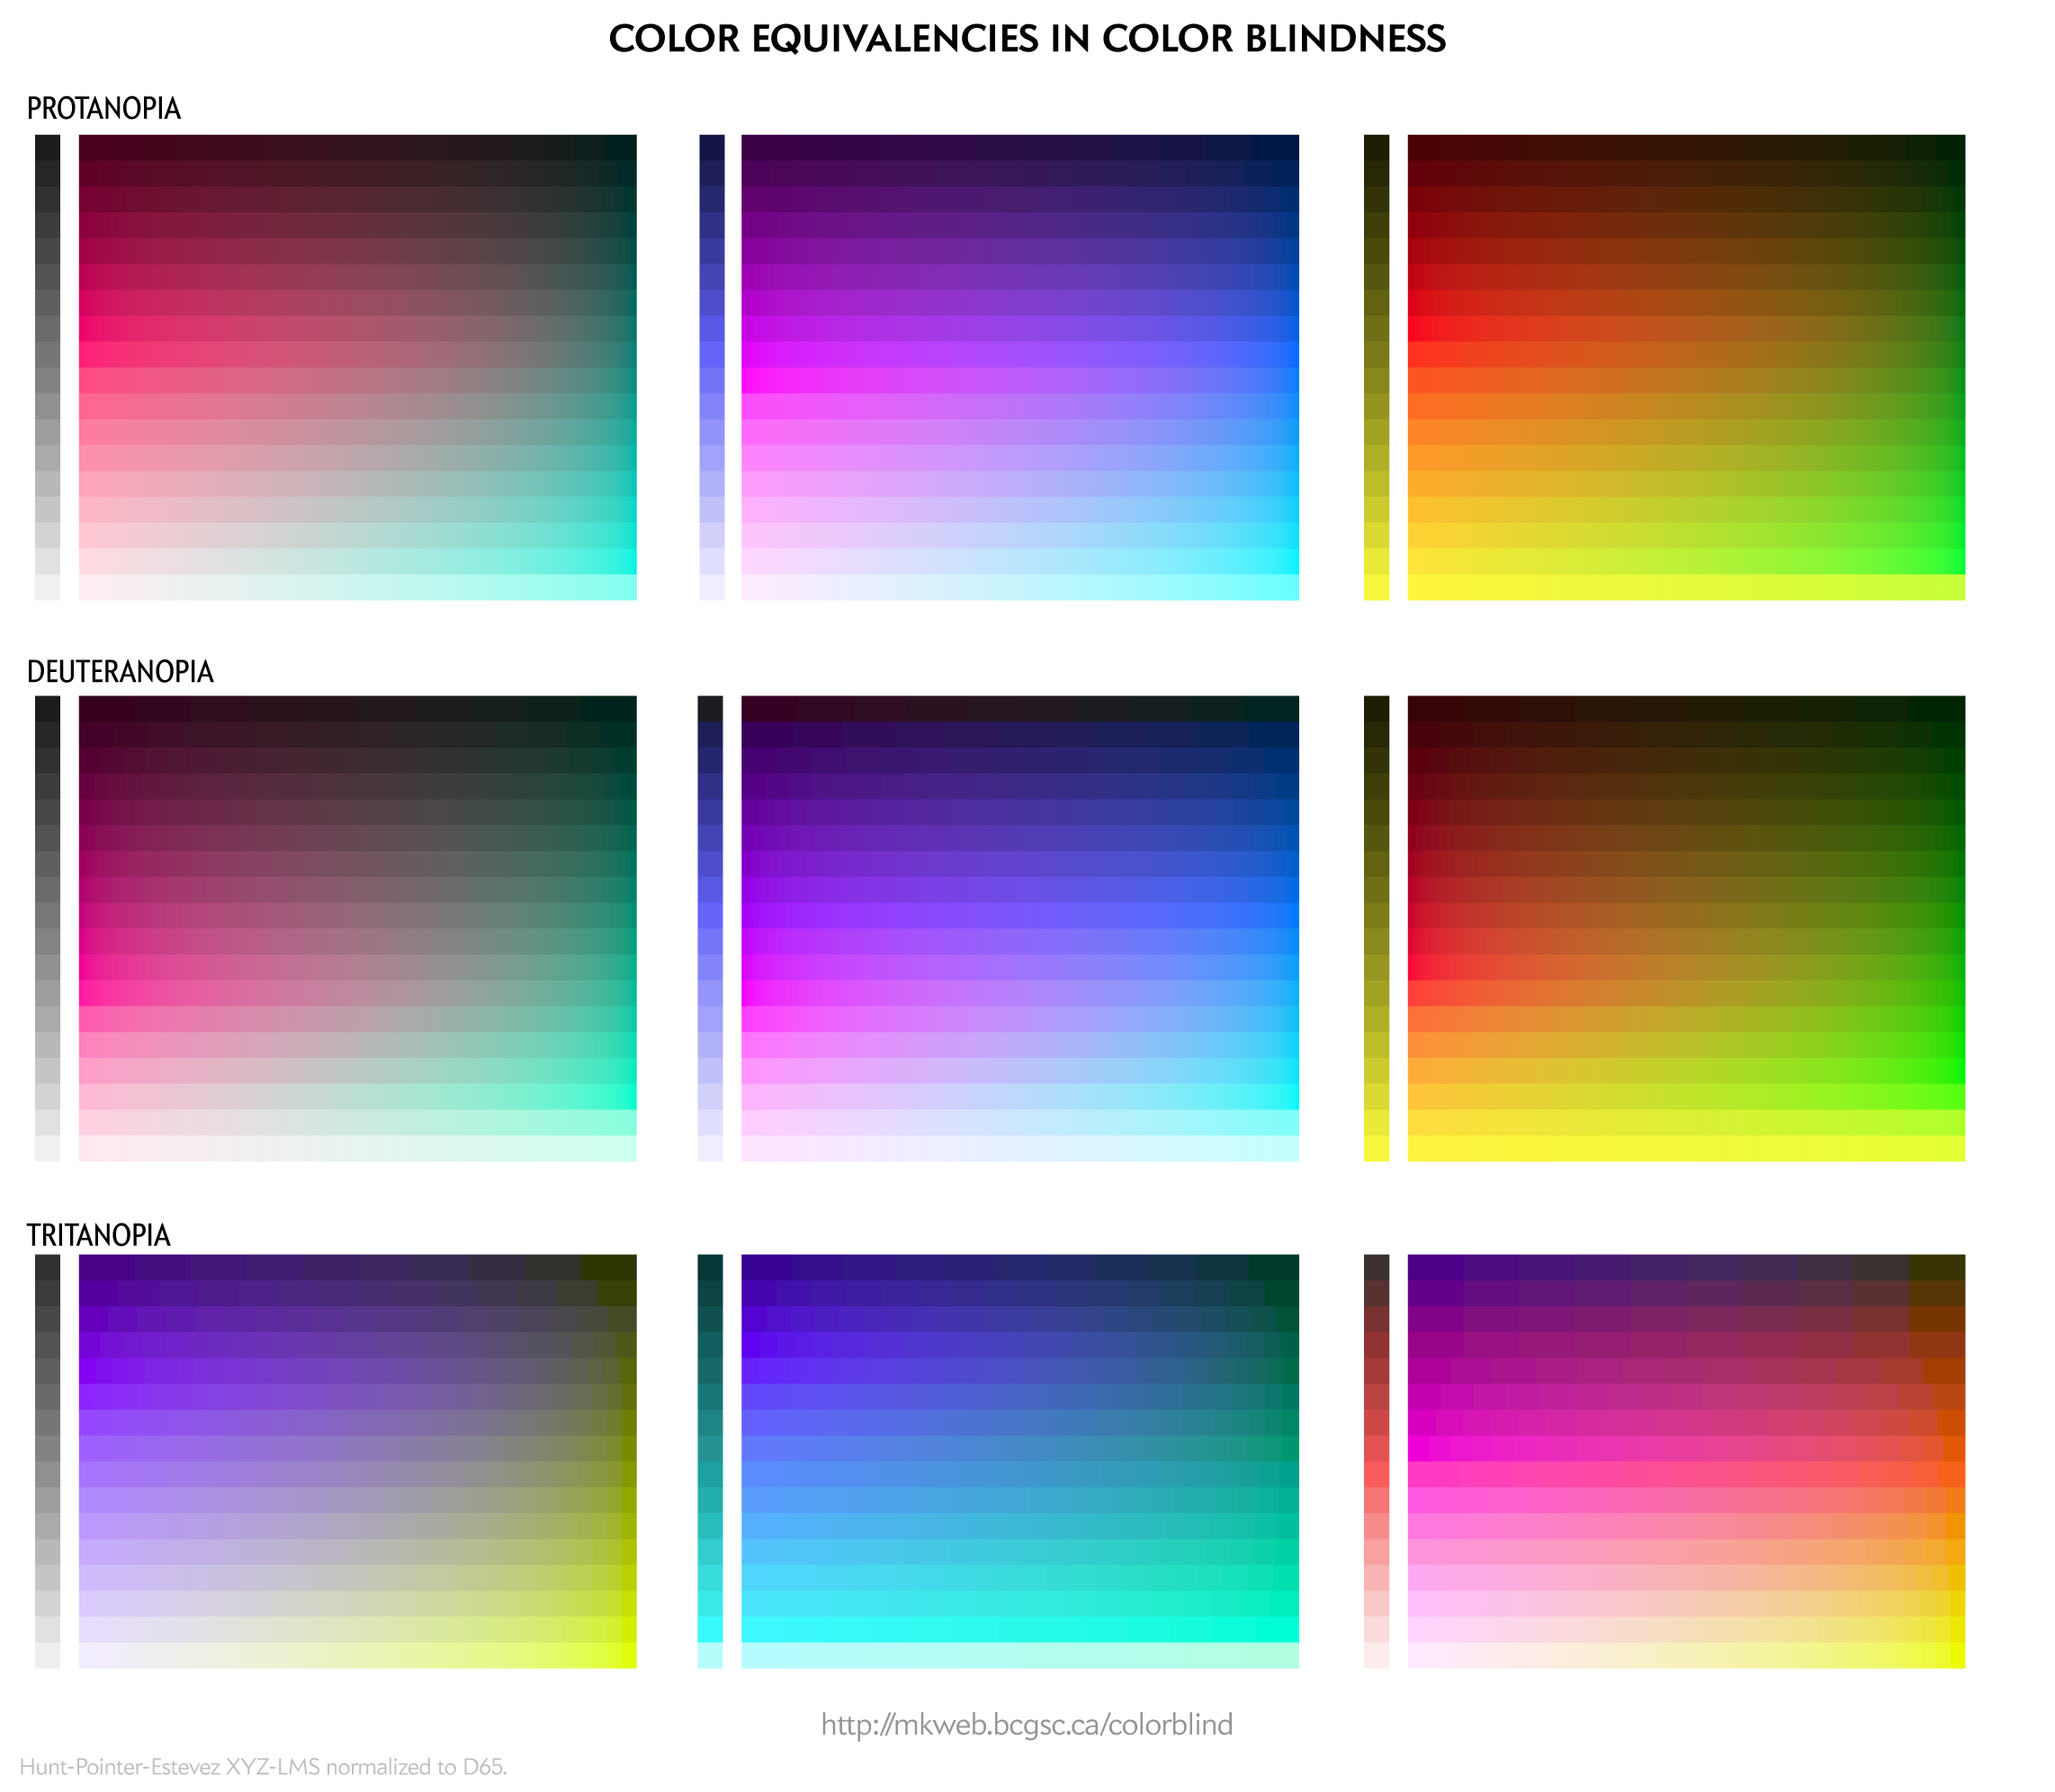 Designing For Color Blindess Martin Krzywinski Genome Sciences Center,Subway Tile Backsplash 2 Colors